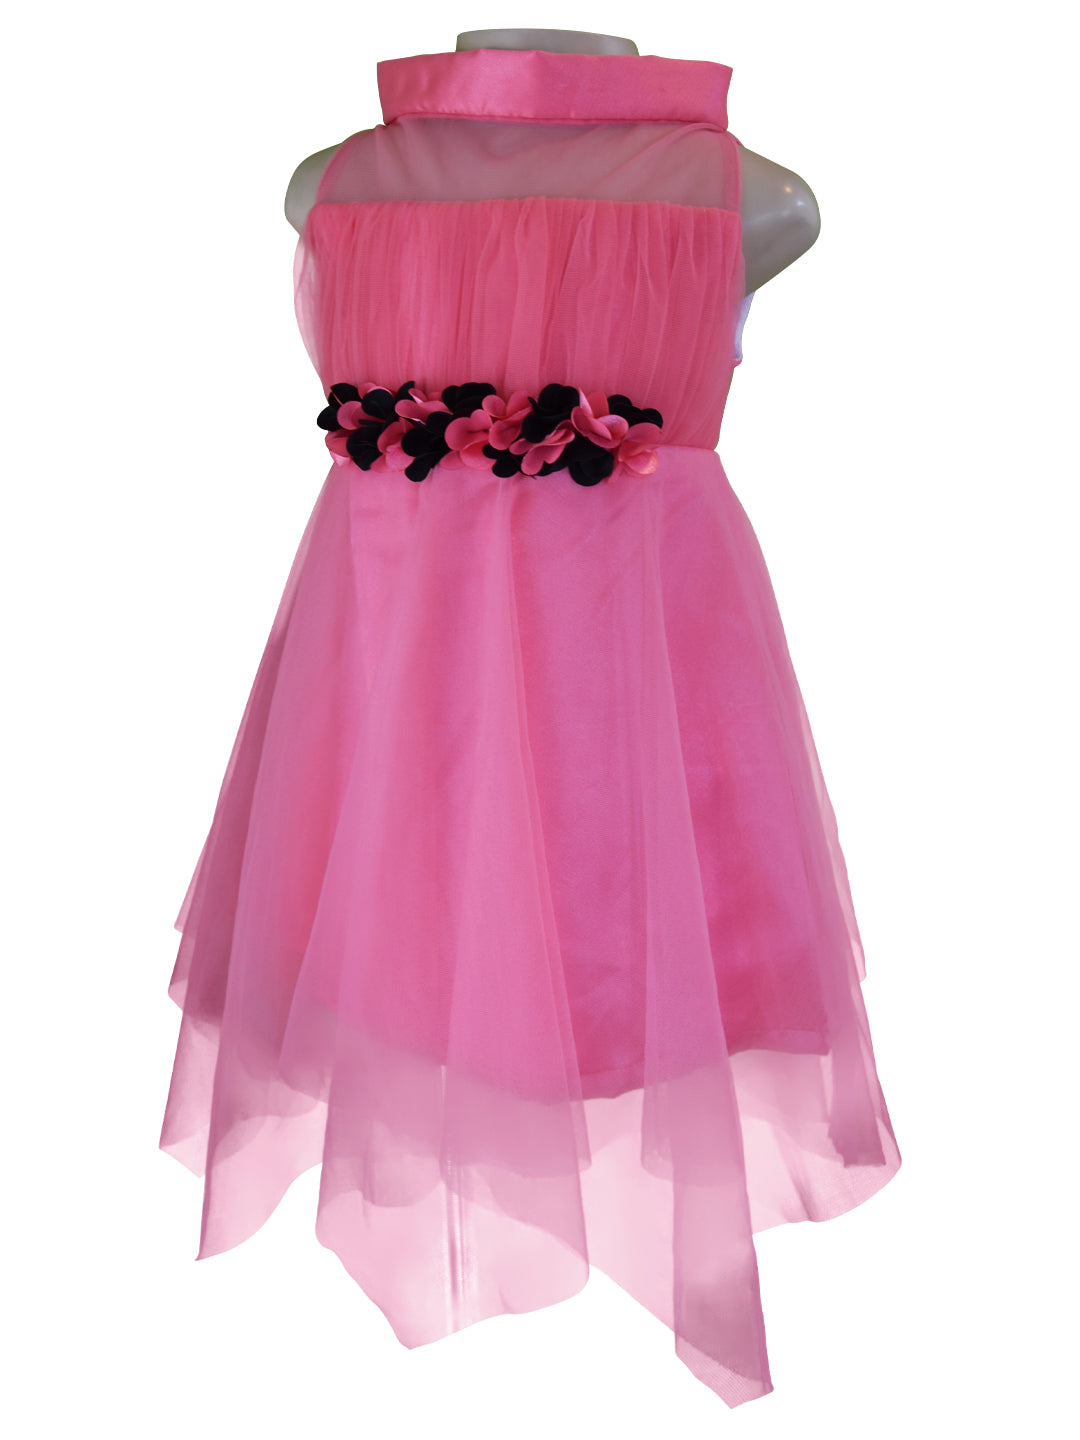 Dress for Girls_Faye Onionpink High Neck Dress